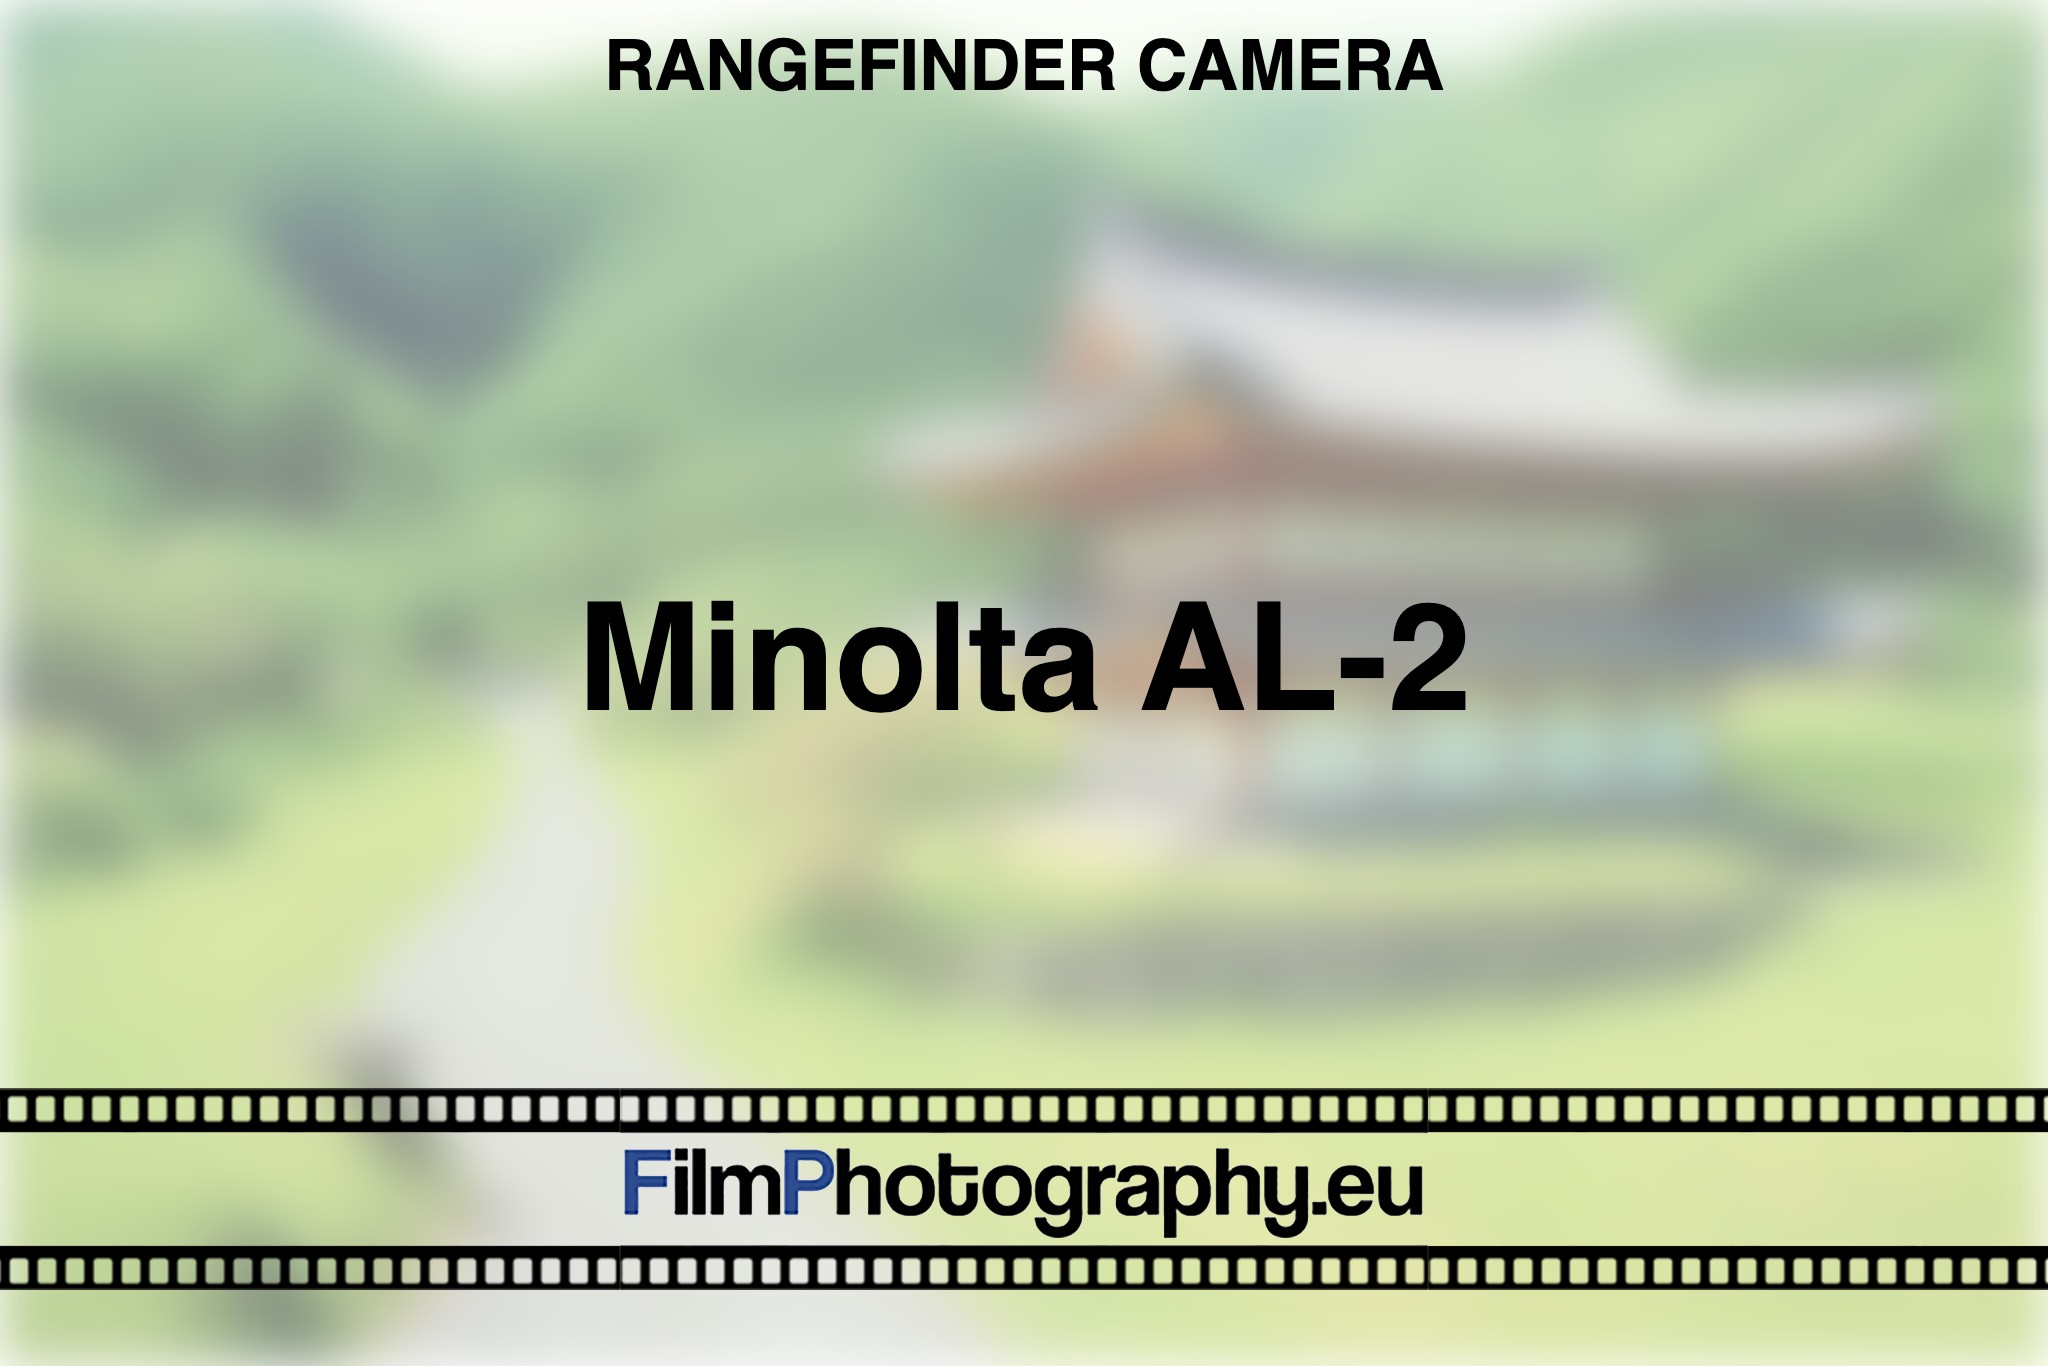 minolta-al-2-rangefinder-camera-bnv